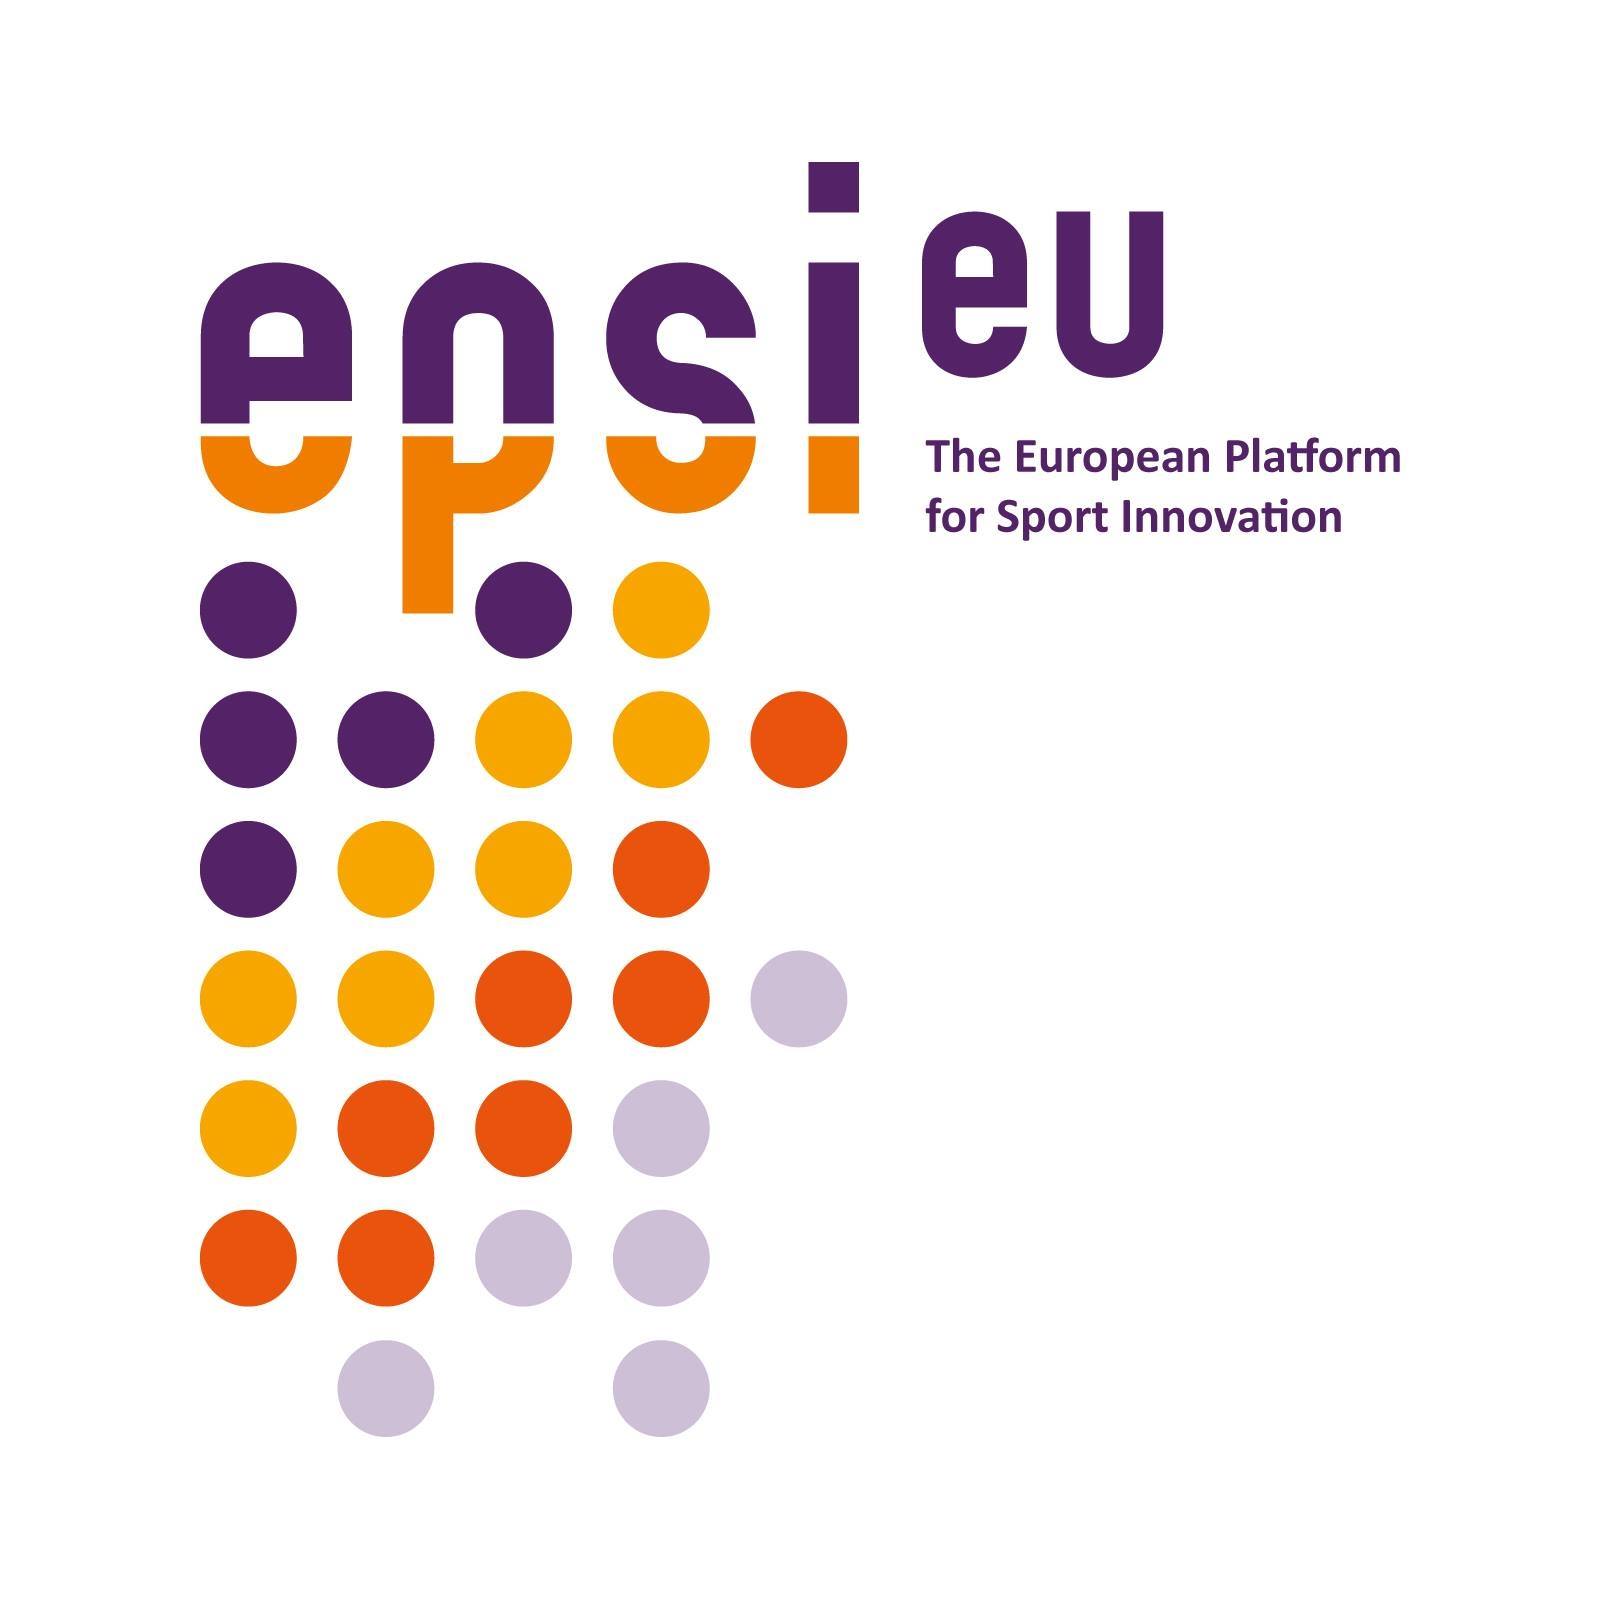 The European Platform for Sport Innovation (EPSI)